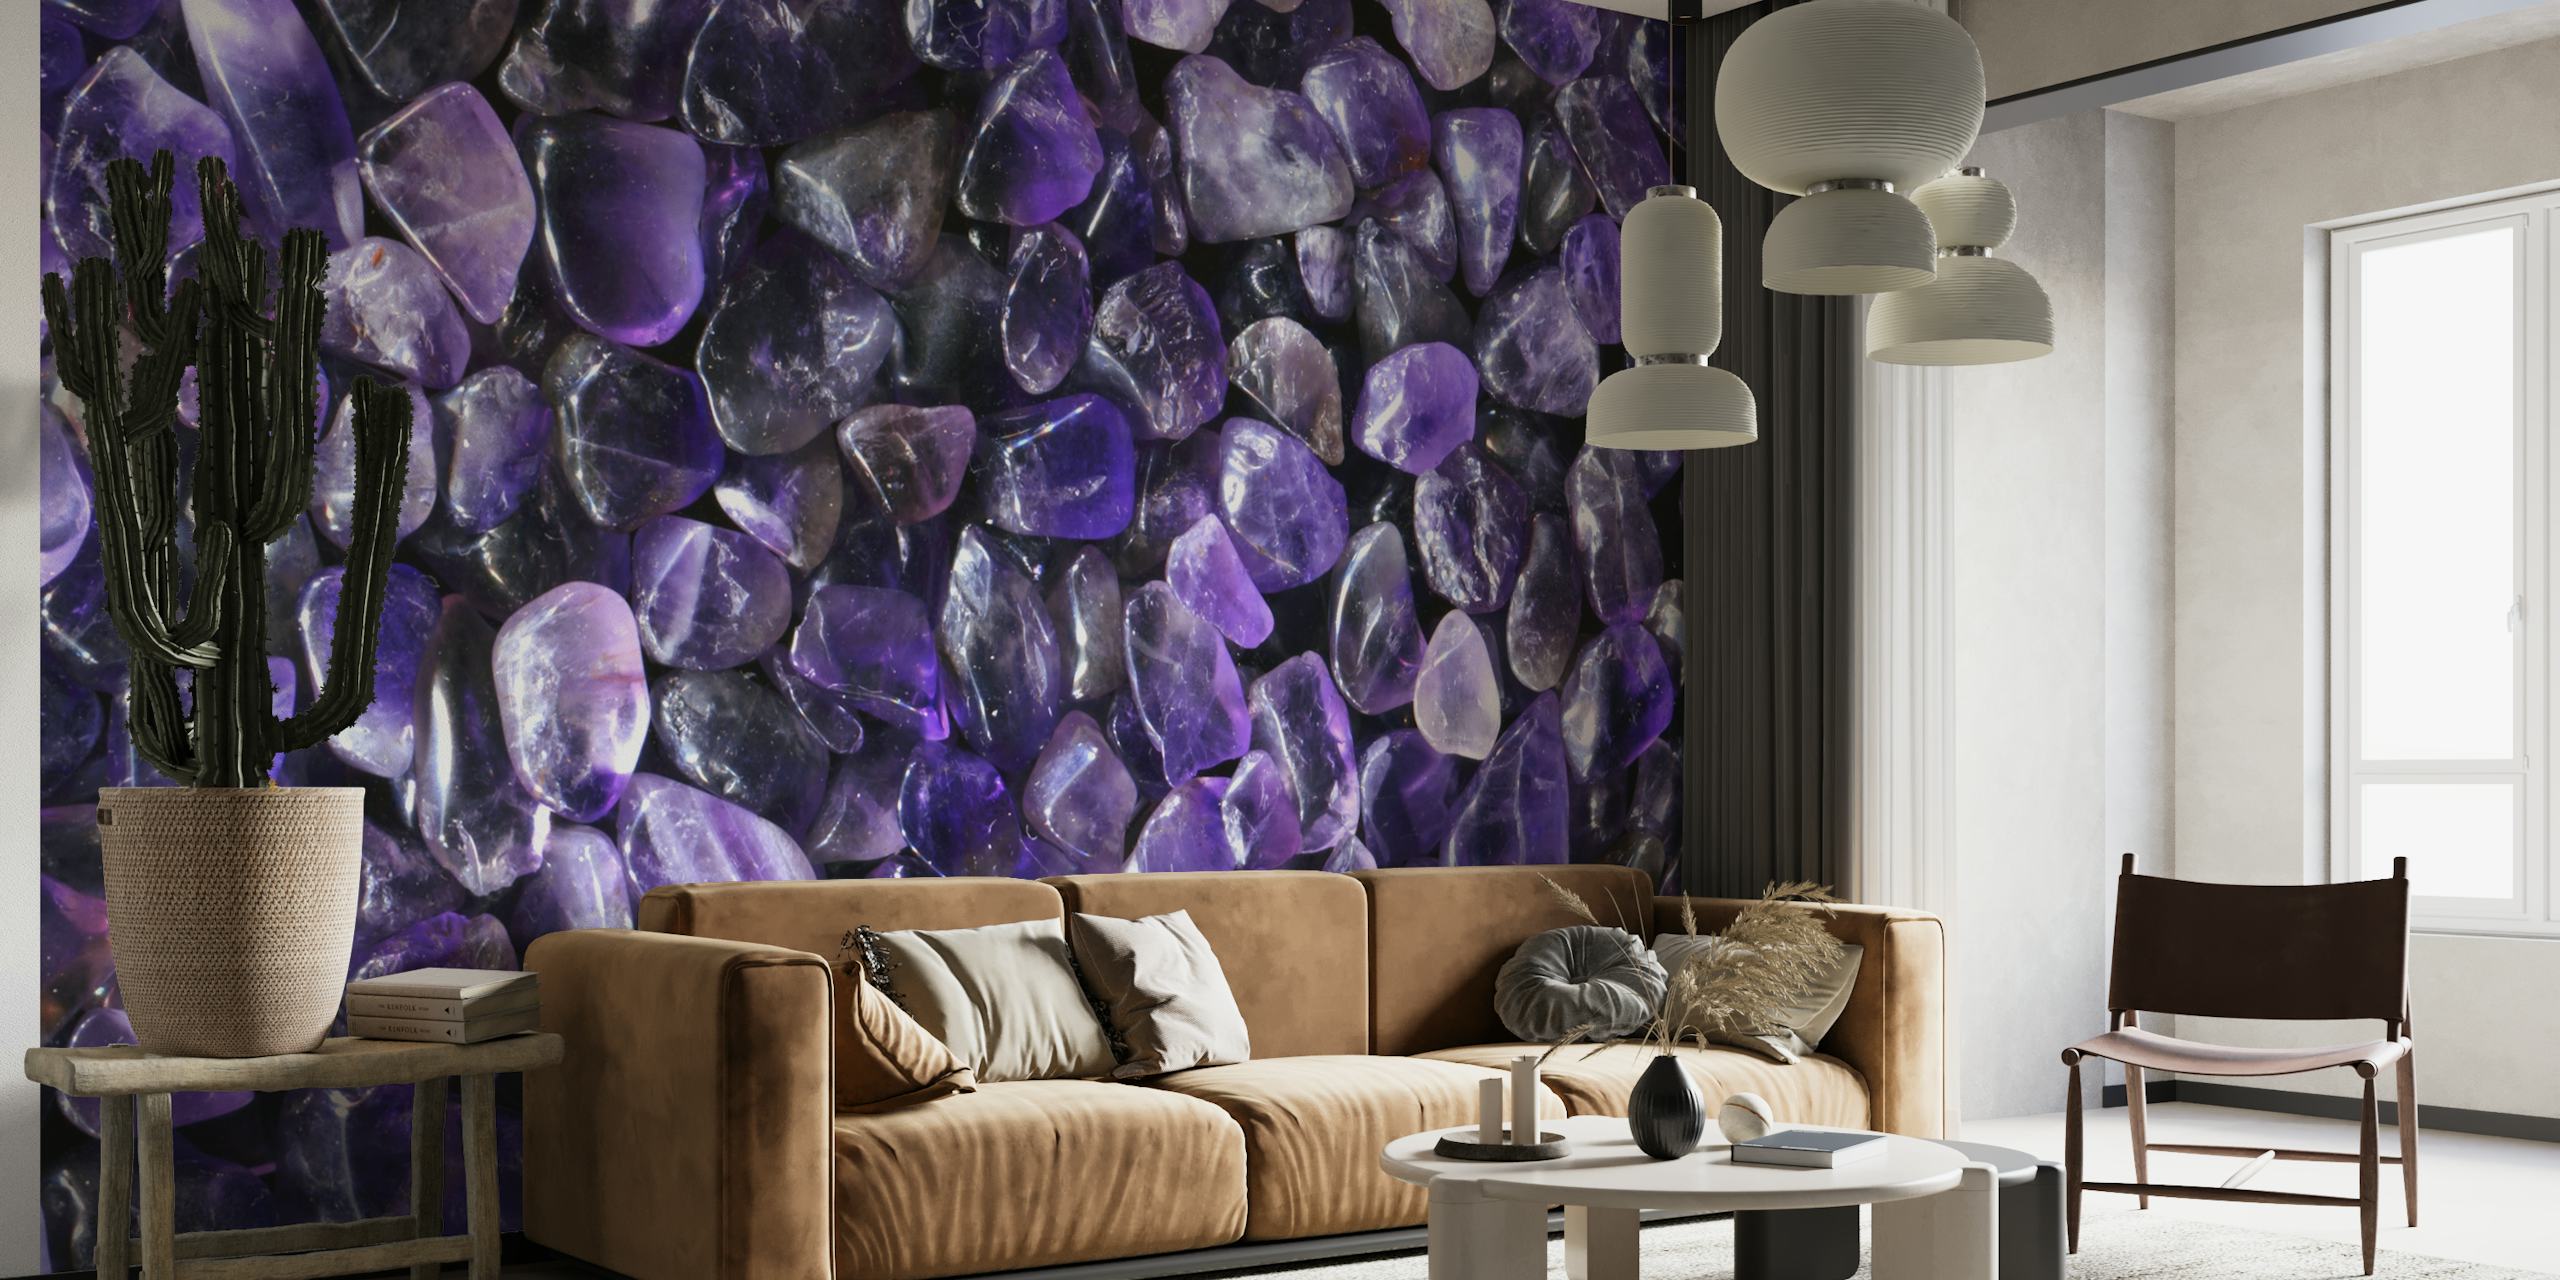 Liliowa fototapeta z kamieniami szlachetnymi z bogatą dekoracją fioletowych krystalicznych kamieni